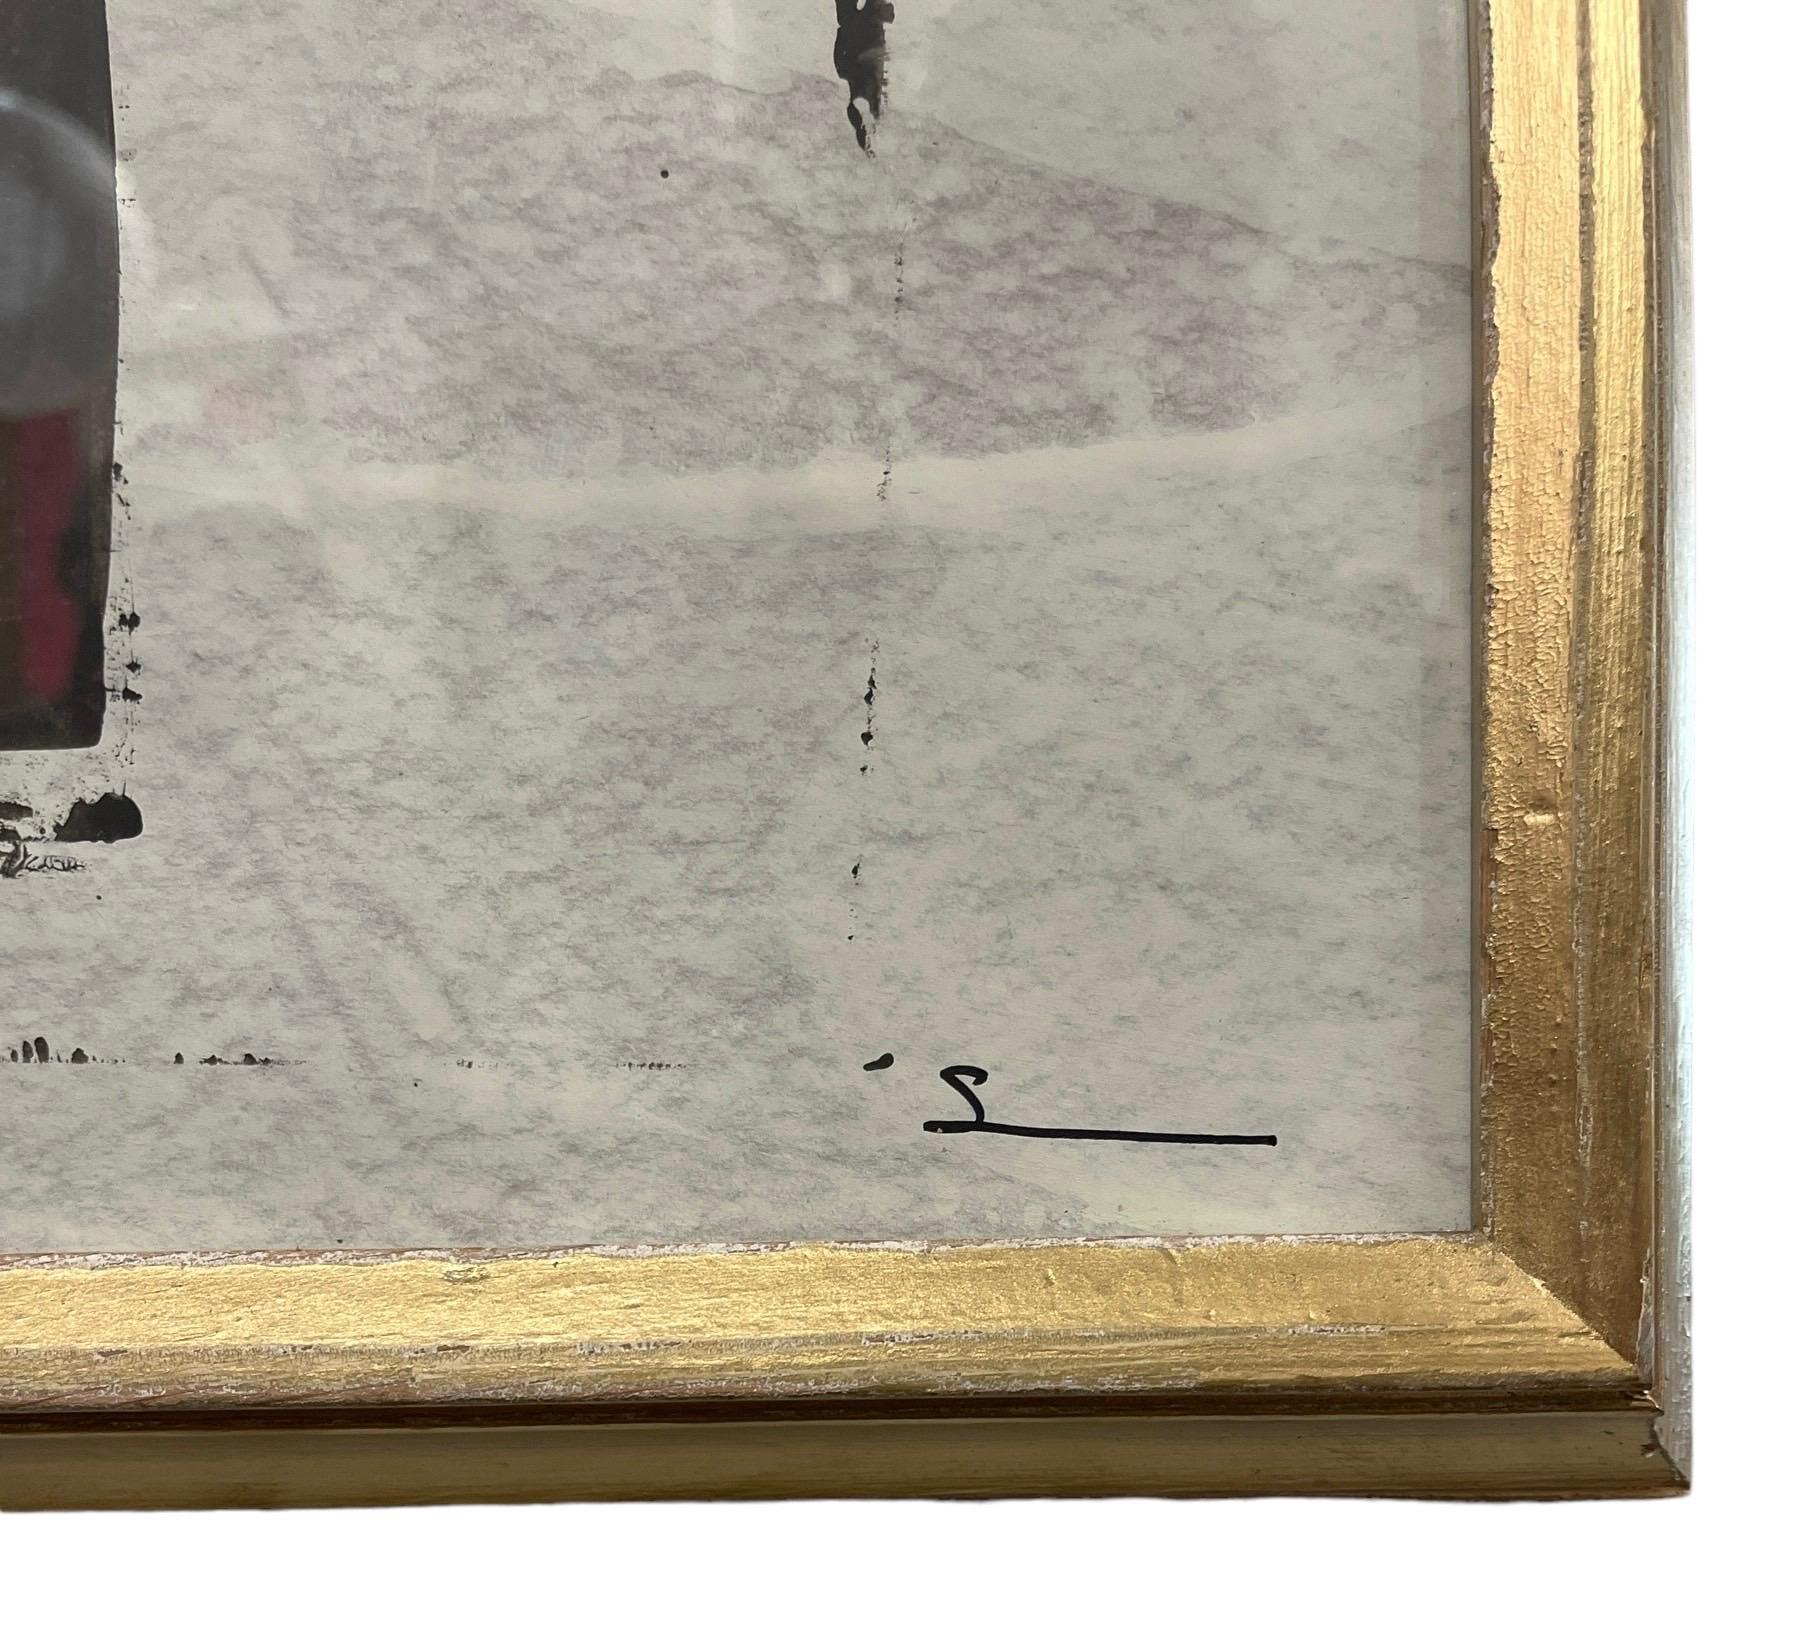 Découvrez l'attrait captivant de l'art contemporain avec ce chef-d'œuvre abstrait en noir et blanc sur papier, élégamment présenté dans un cadre en or antique par la talentueuse artiste Shannon Weir. Avec un mélange méticuleux de contrastes